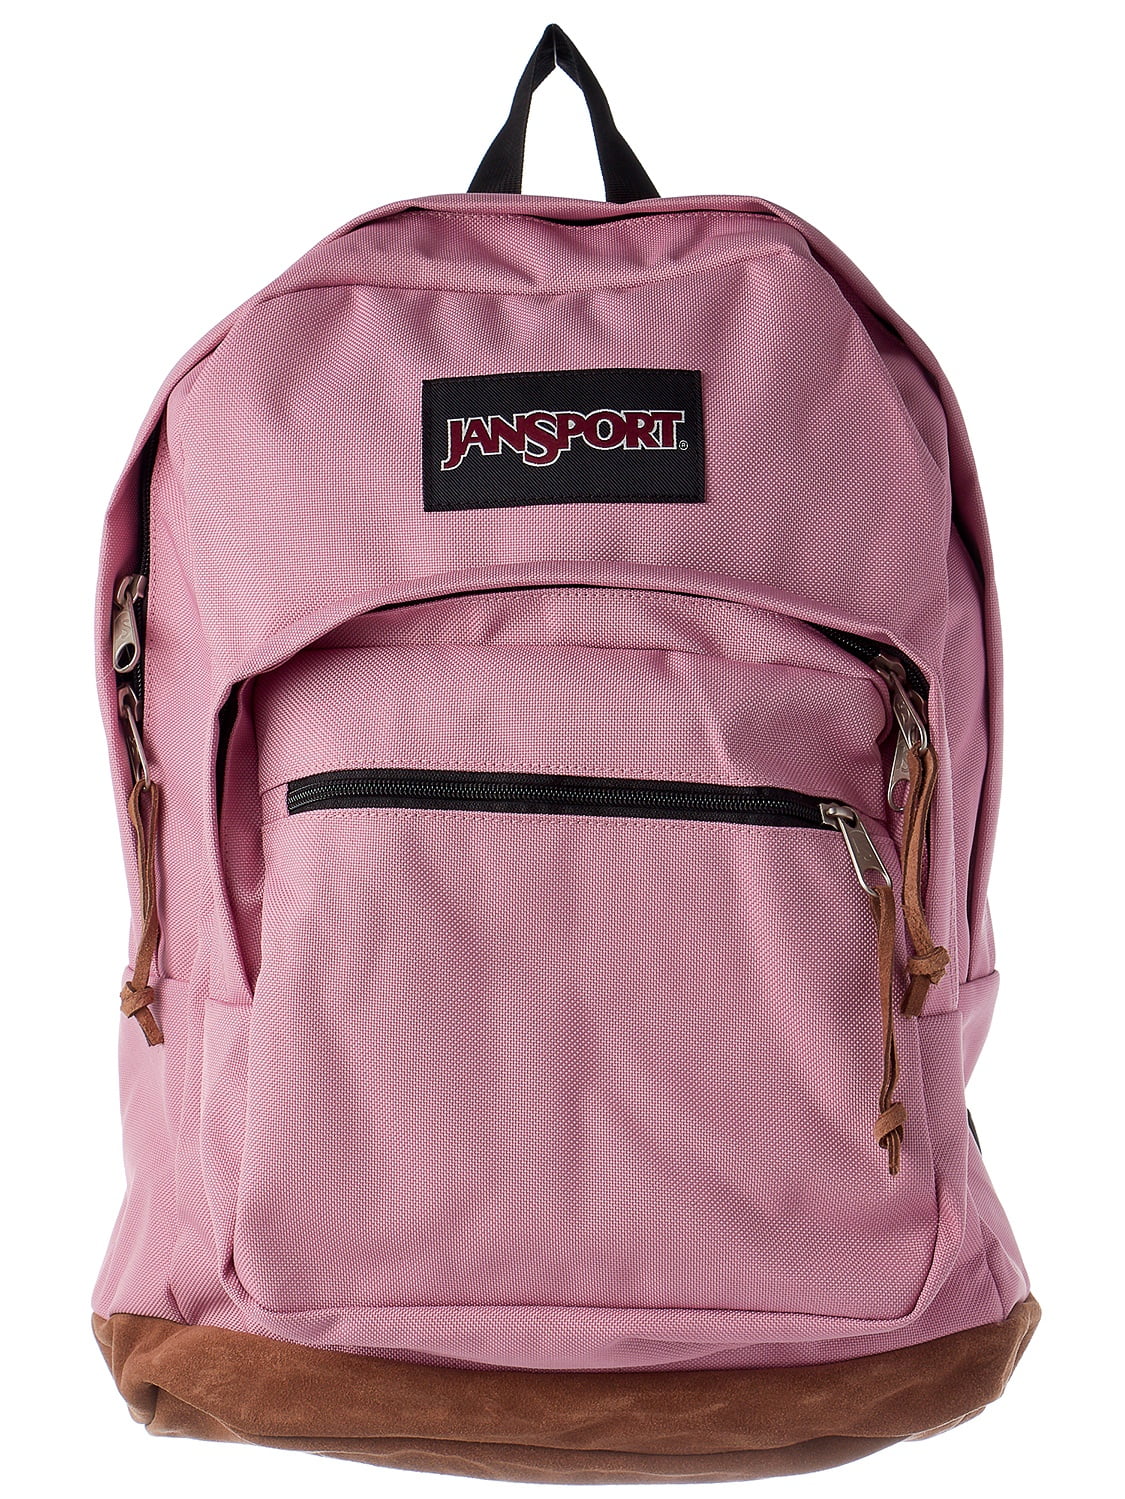 JanSport Right Pack Backpack - Walmart.com